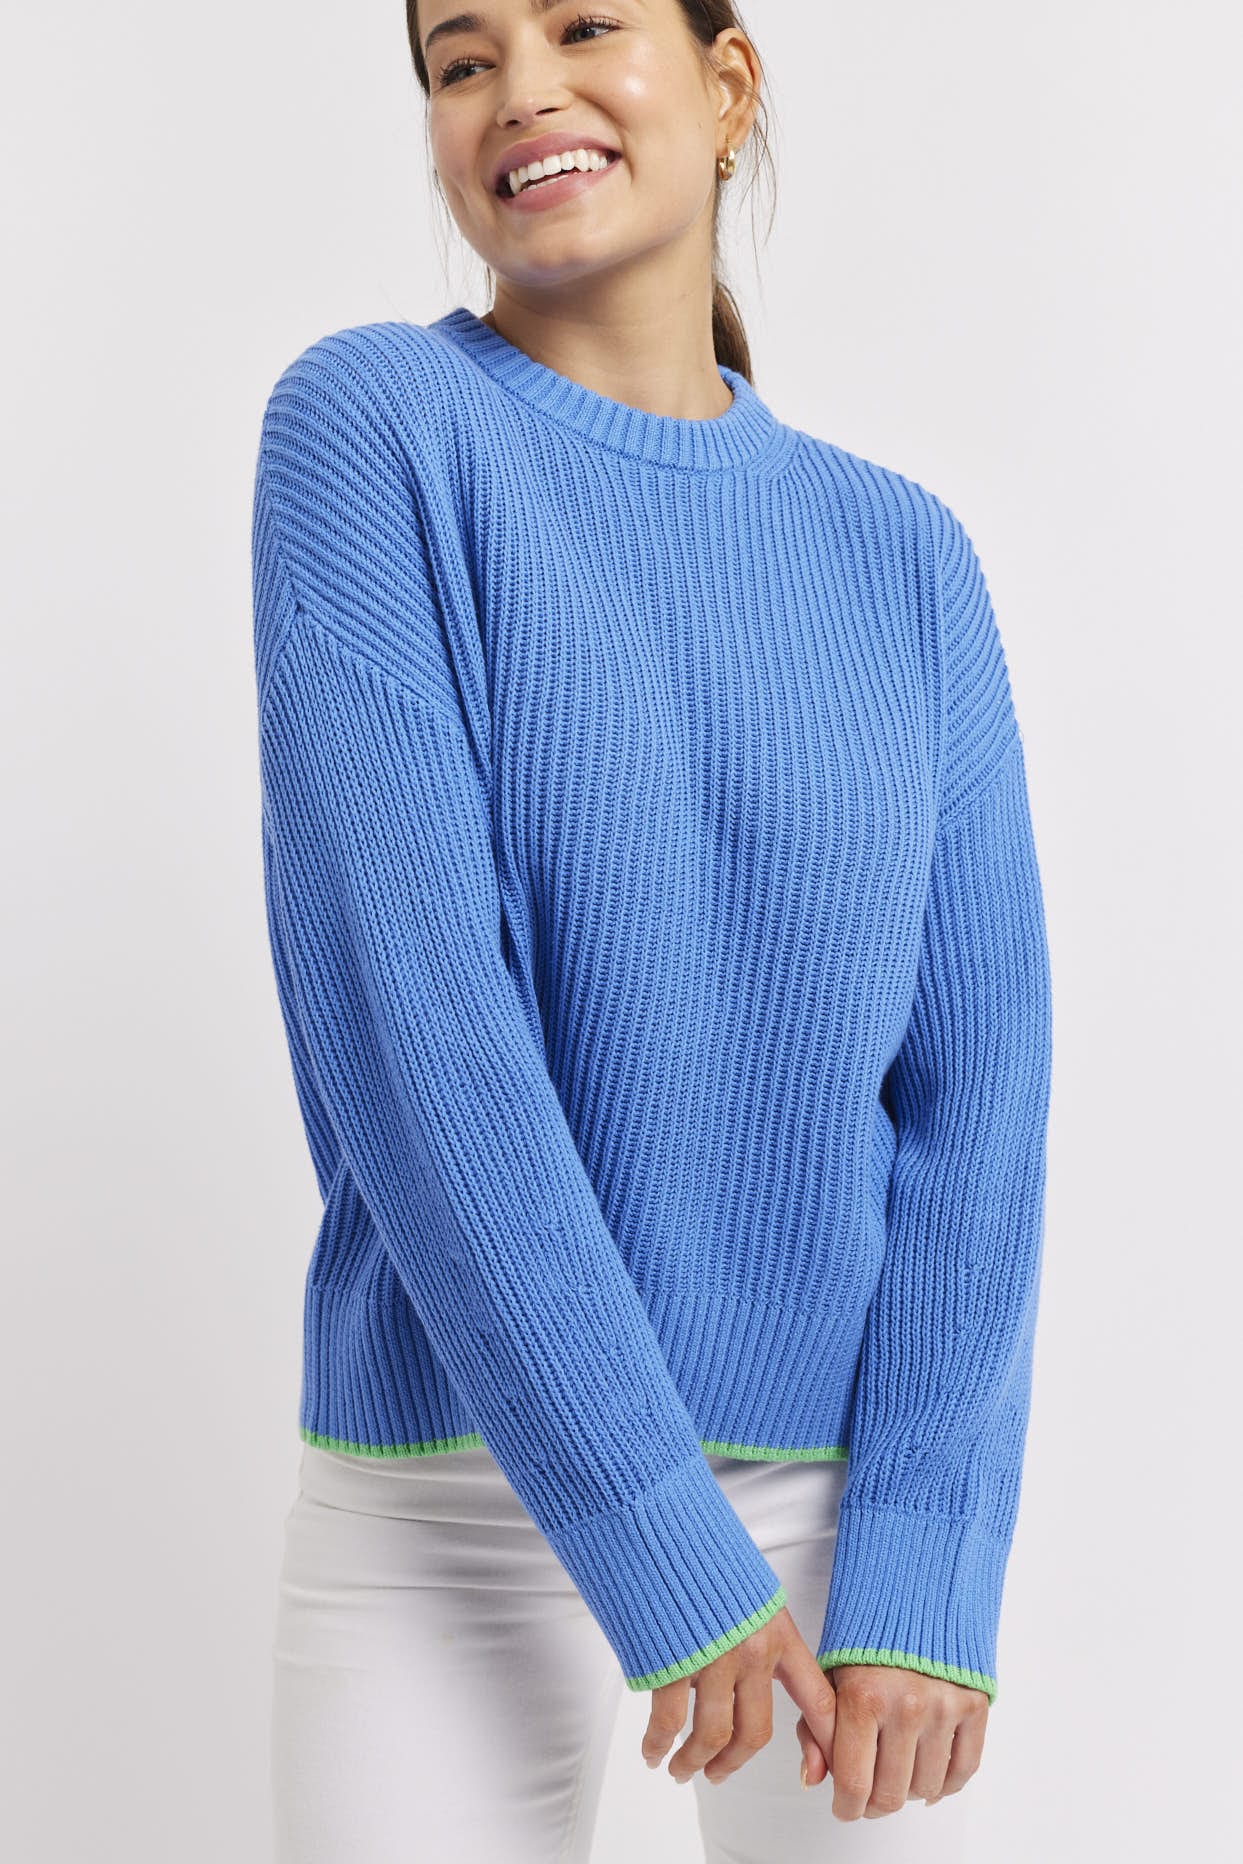 Limone Sweater || Sailor